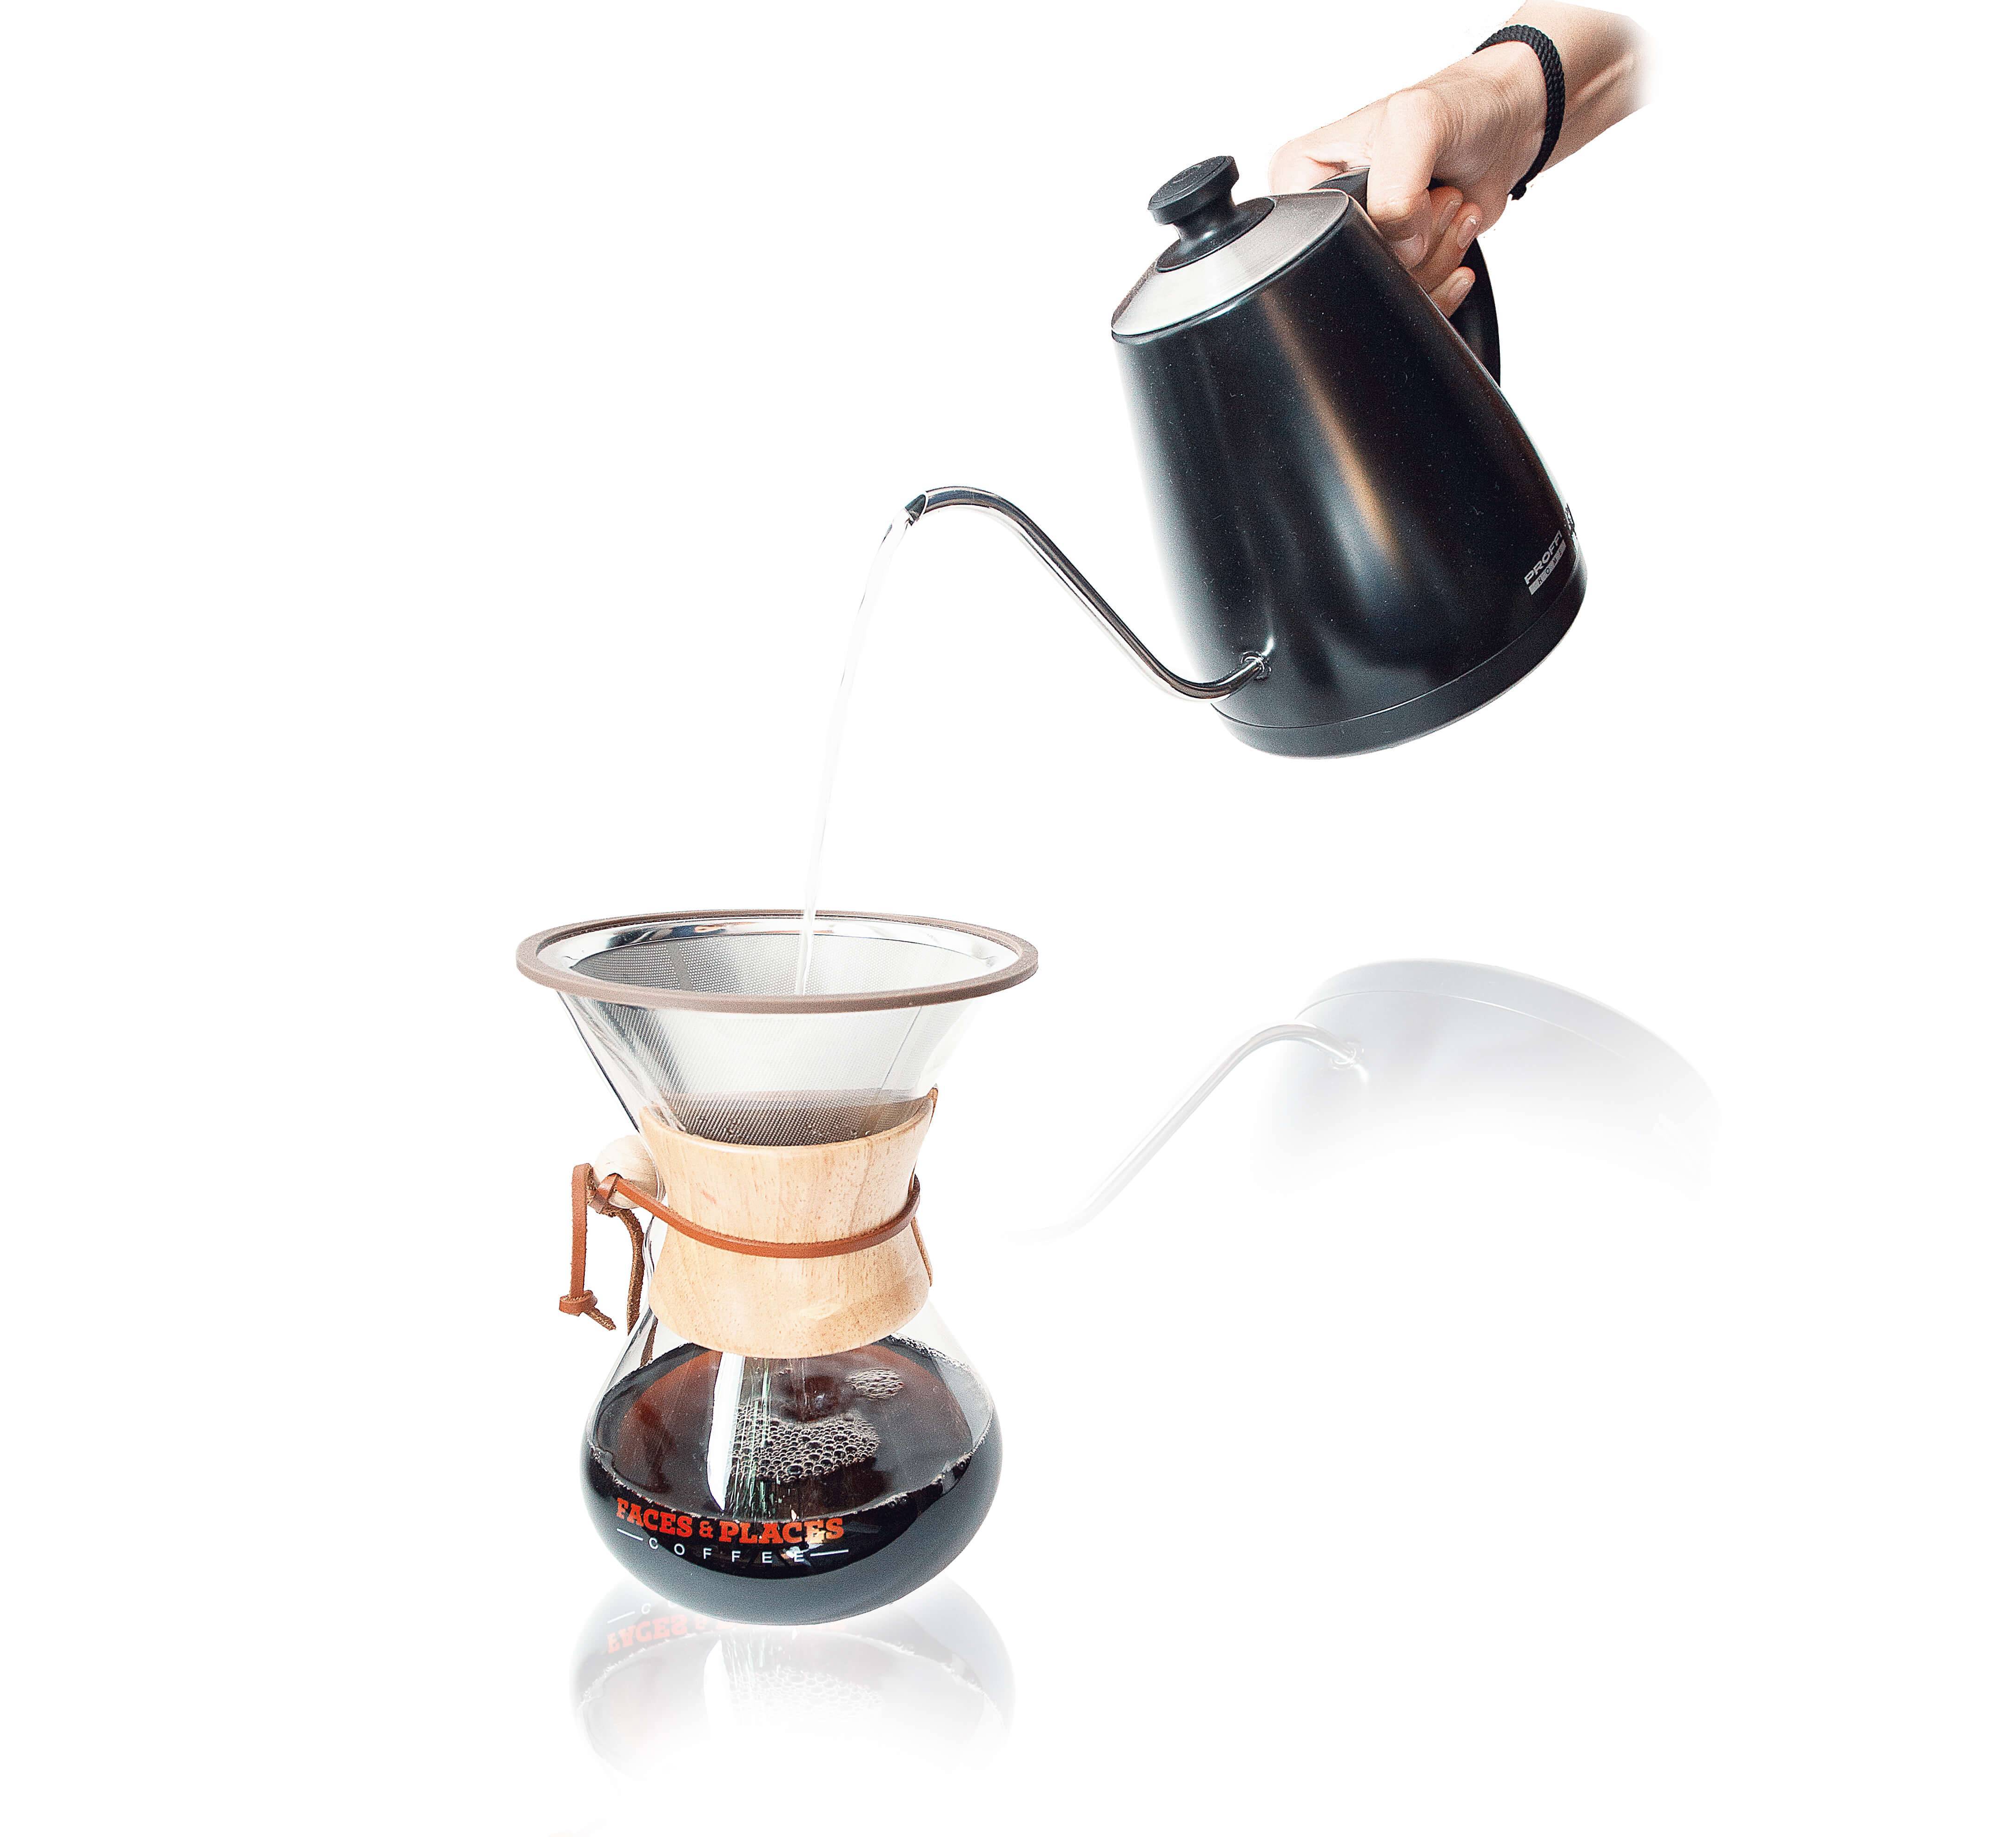 Пуровер (харио): понятие, виды, технология заваривания кофе